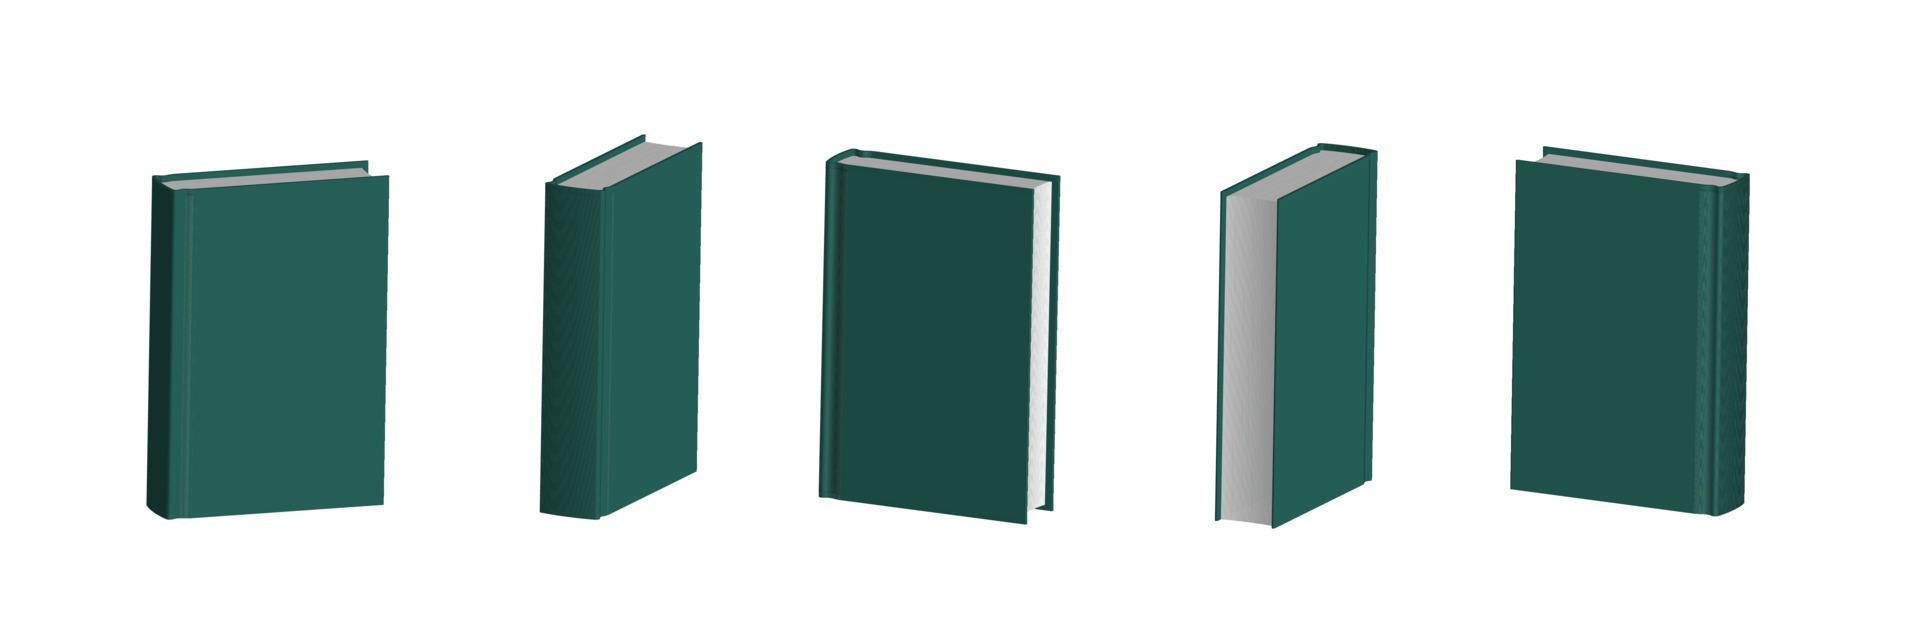 uppsättning stängda mörkgröna böcker i olika positioner för bokhandel vektor